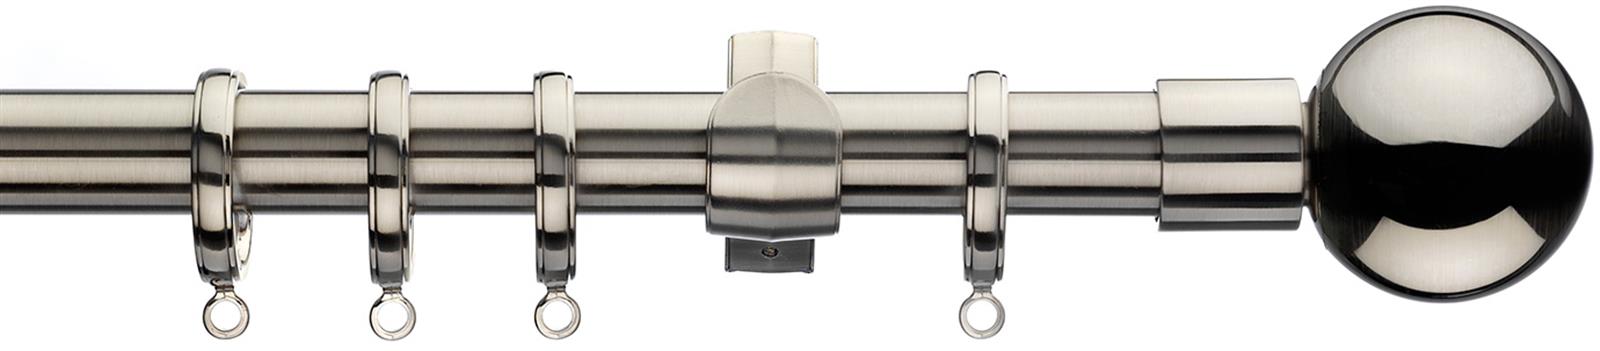 Integra Inspired Lustra 28mm Pole Curvatura Satin Nickel Sphera